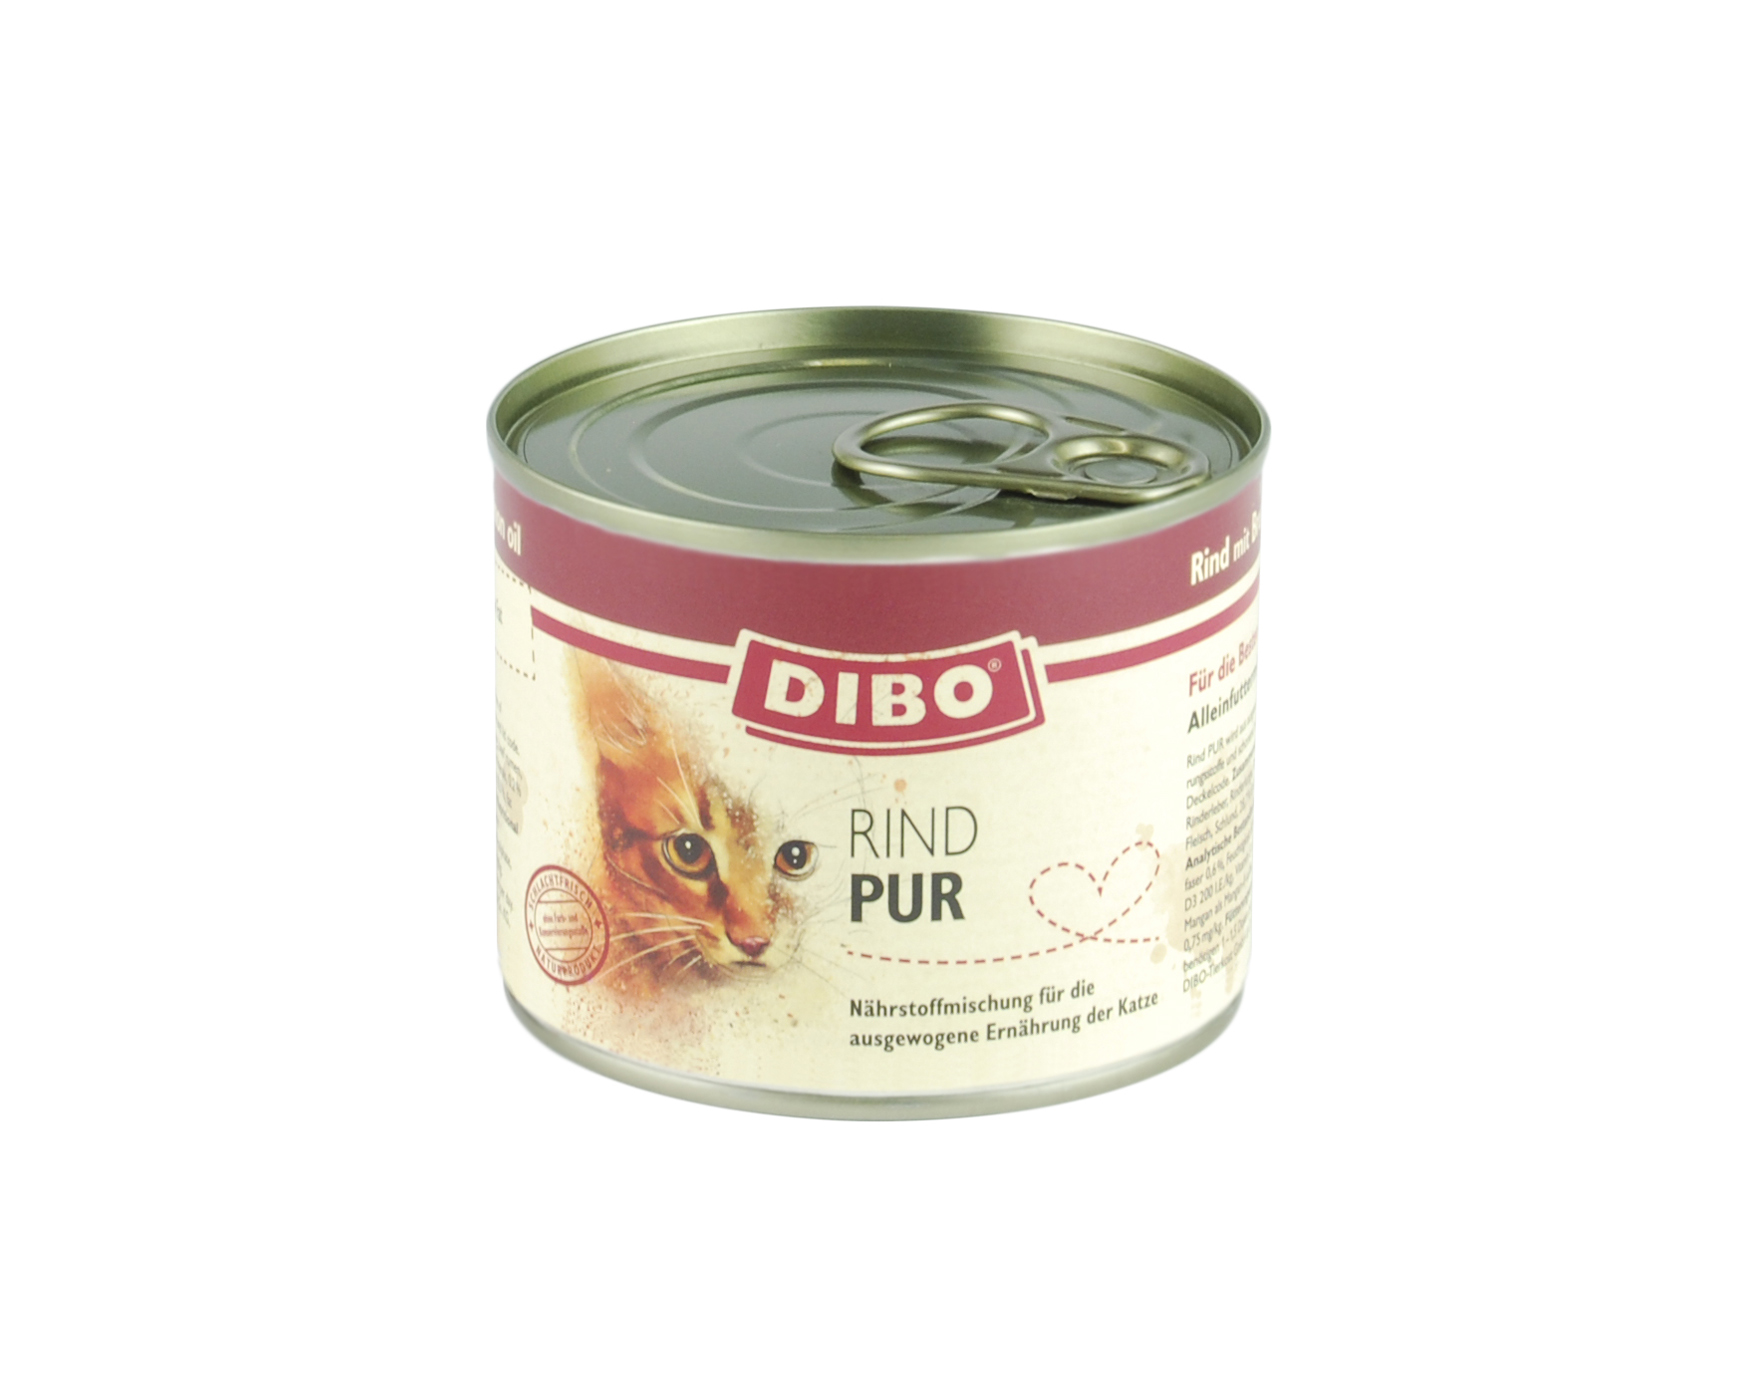 DIBO - CAT PUR RIND, 200g-Dose